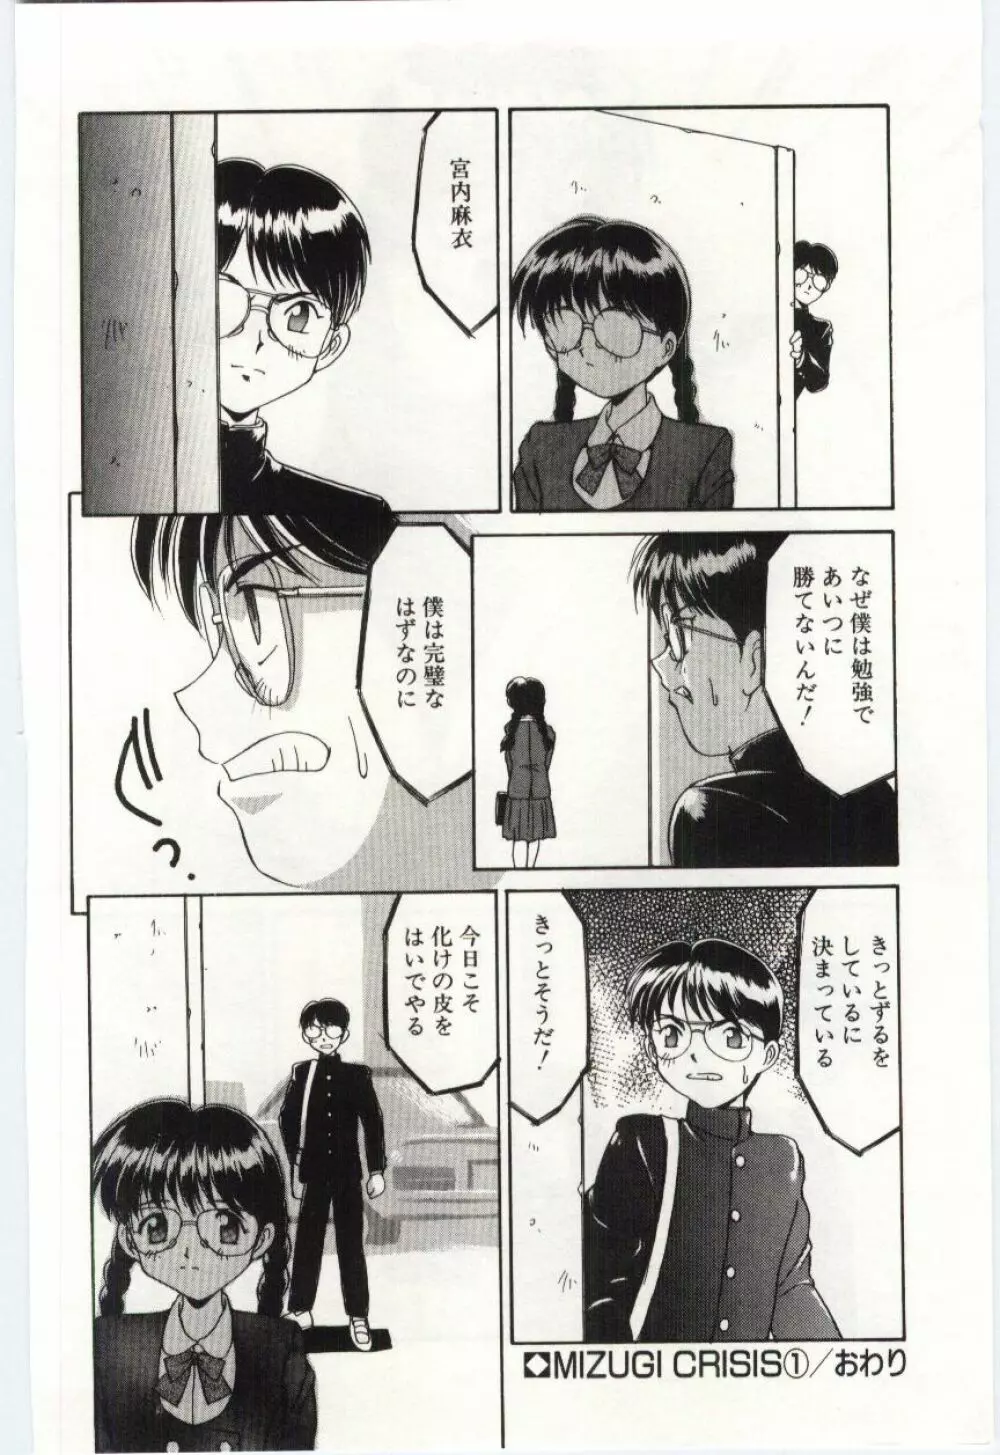 Mizugi Crisis part 1 - JP Page.23